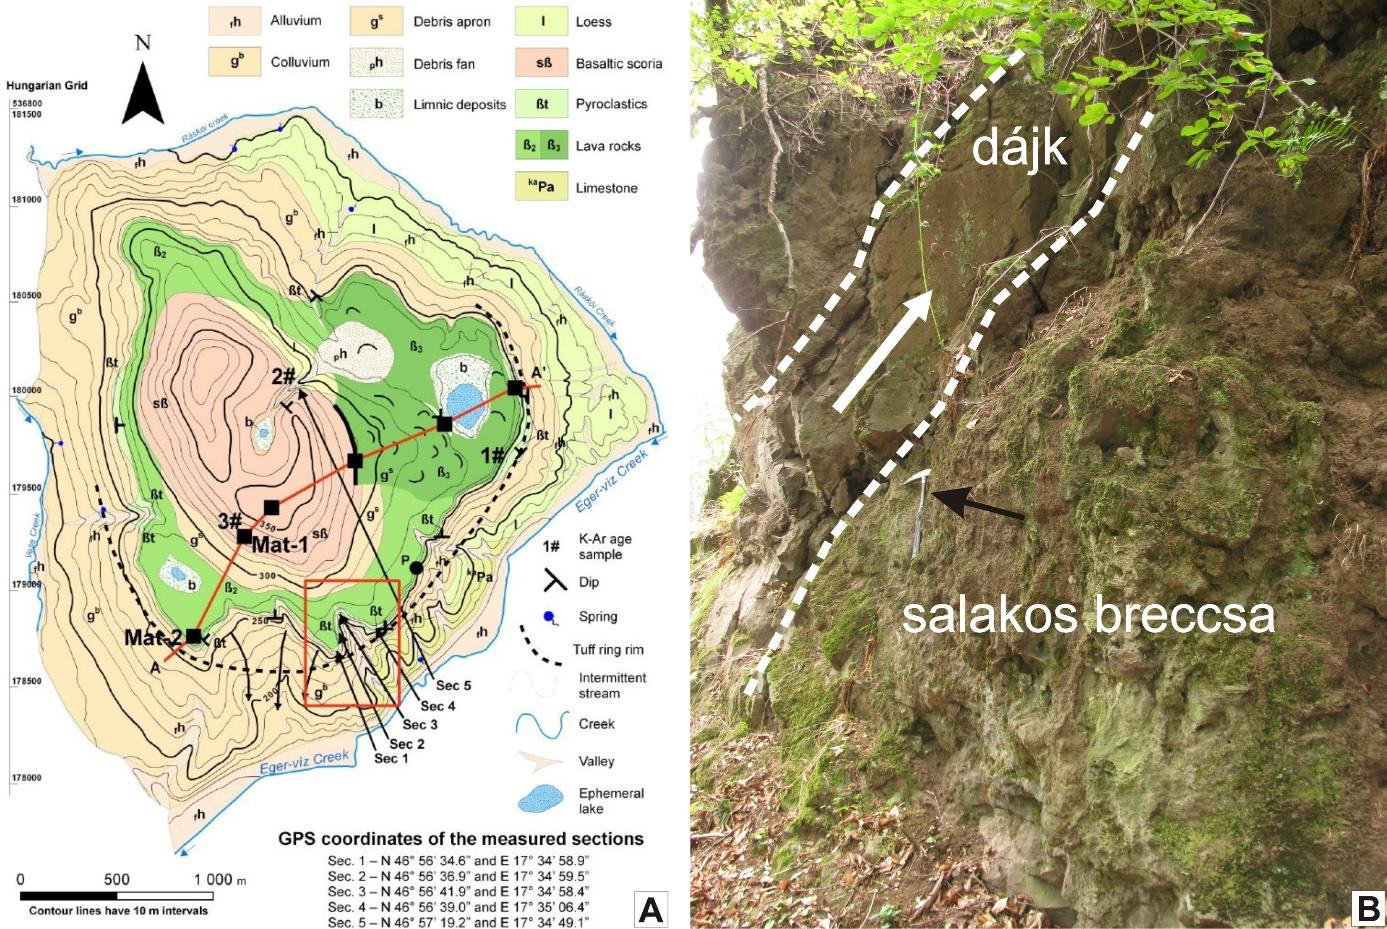 4.1. ábra: A: a Bondoró-hegy földtani térképe (forrása: Kereszturi és mtsi., 2010), az általam vizsgált kőzetek a sötétzölddel jelölt 3.